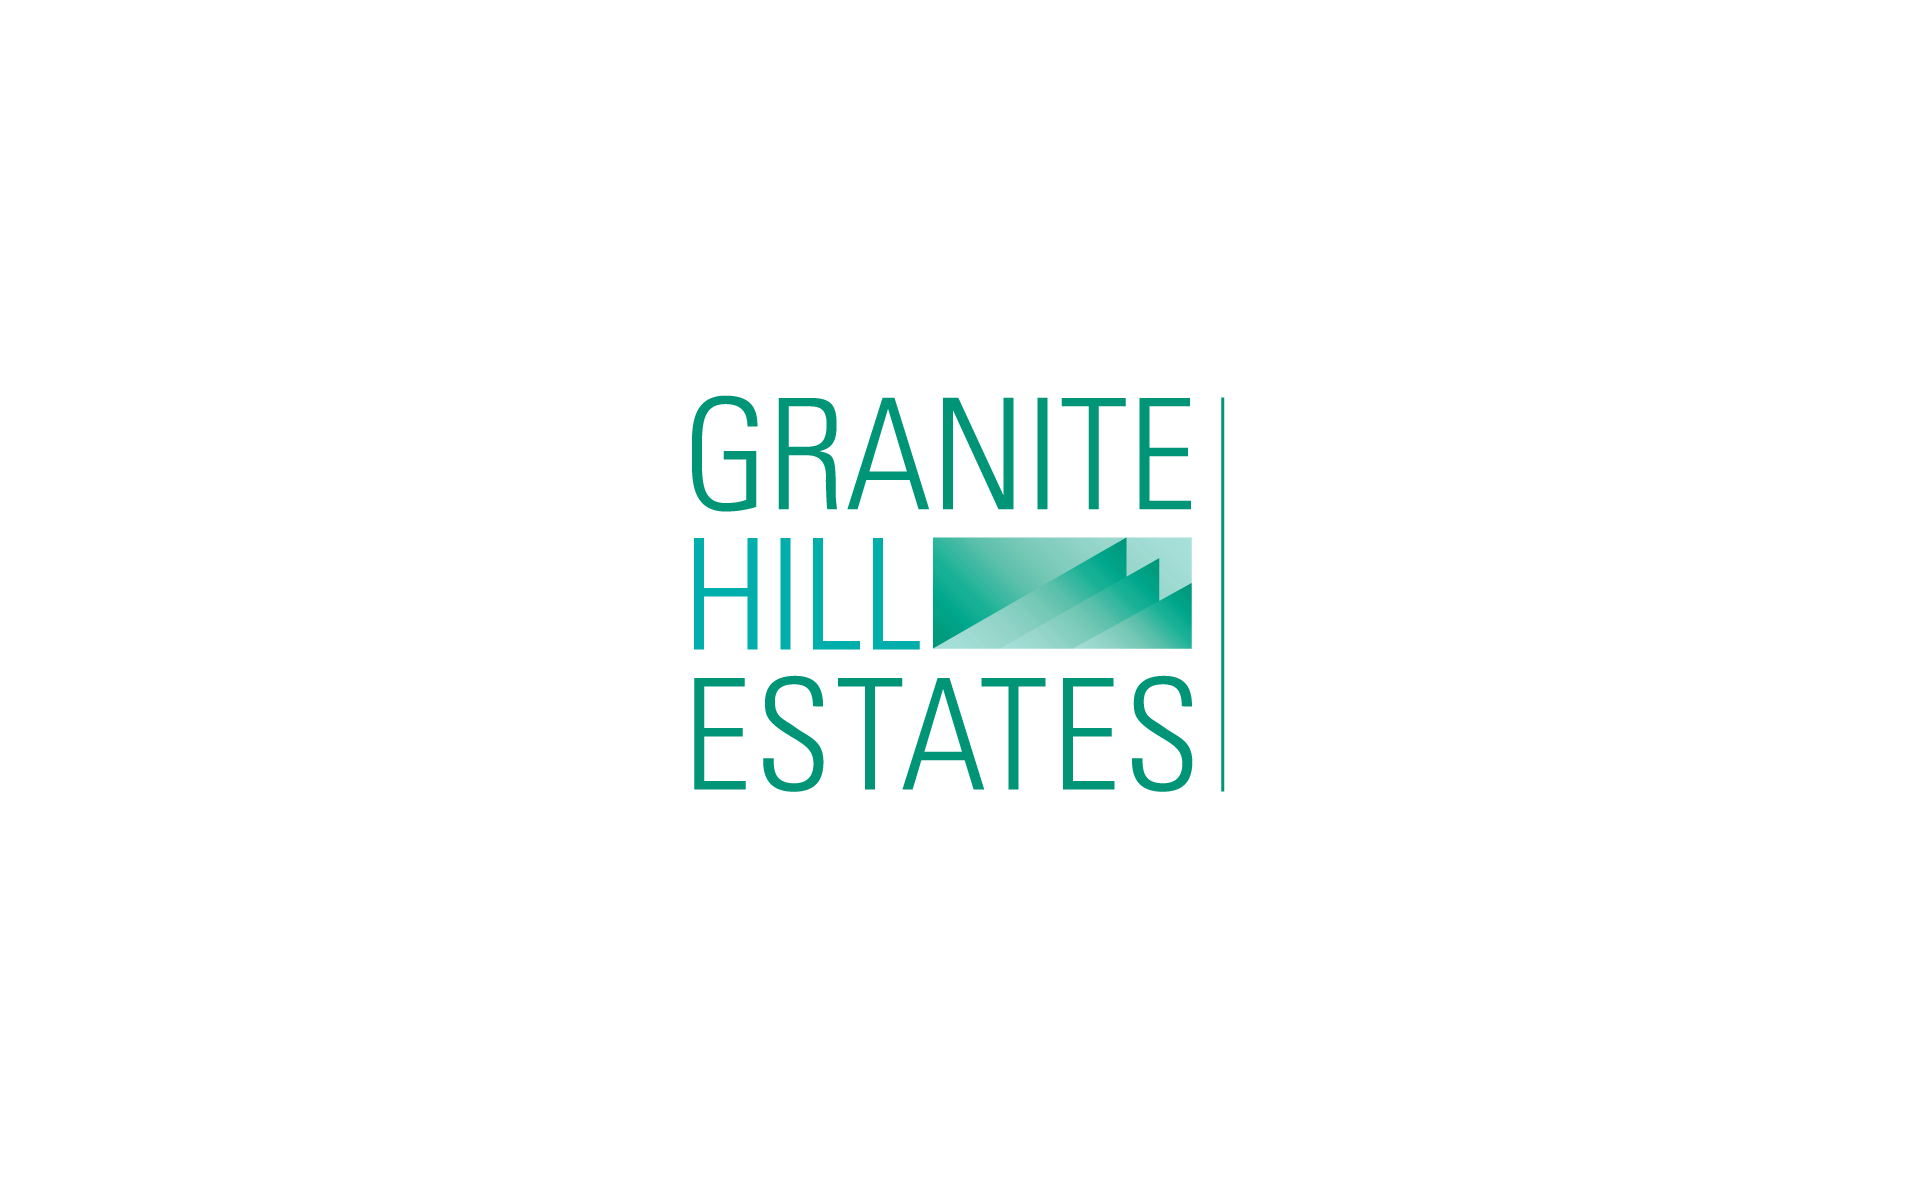 Granite Hill Estates Identity